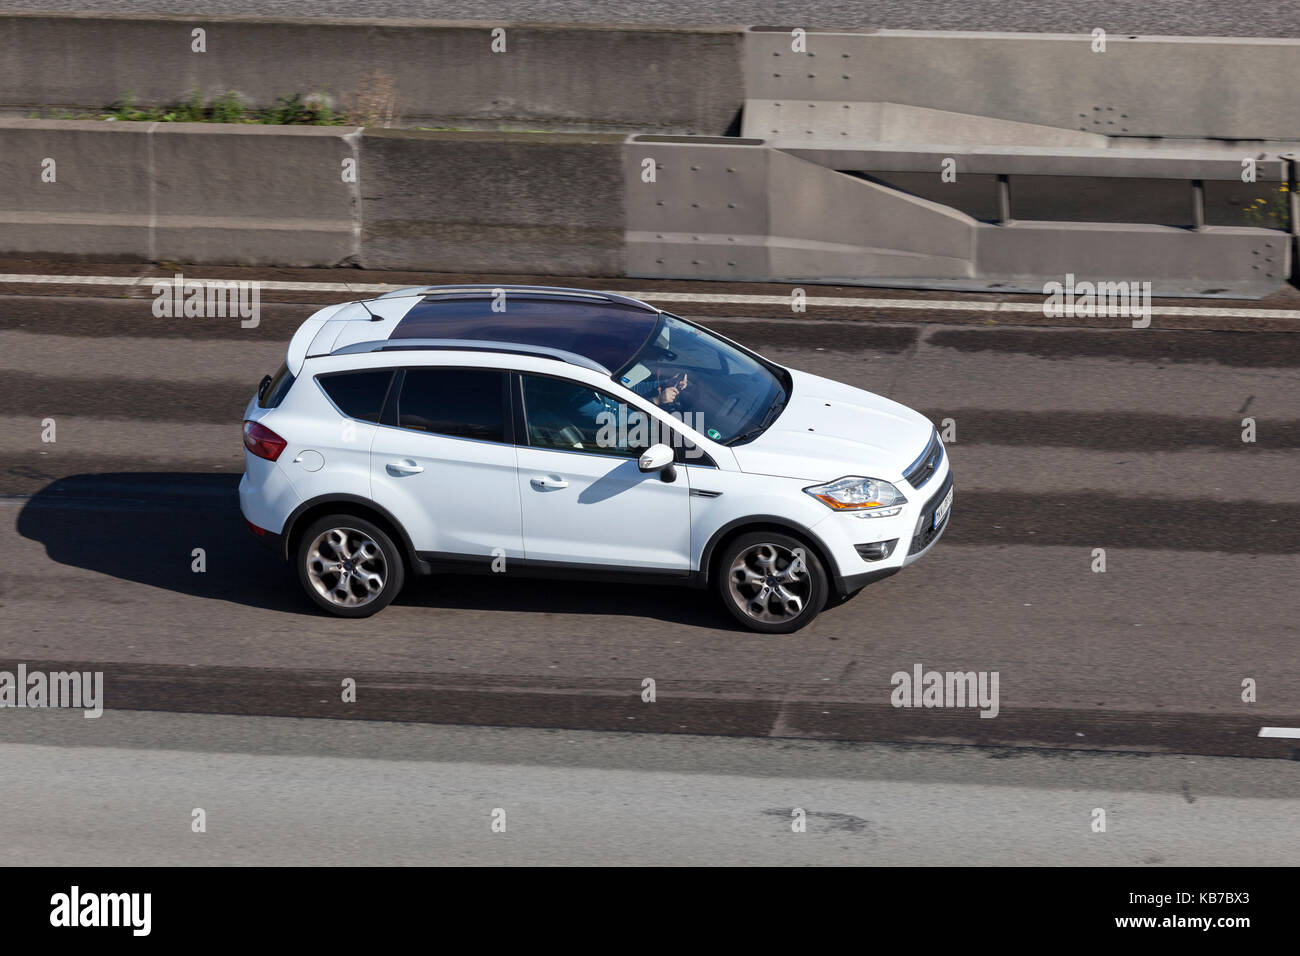 Francfort, Allemagne - Sep 19, 2017 : Ford Kuga suv compact (échappement) roulant sur l'autoroute en Allemagne Banque D'Images